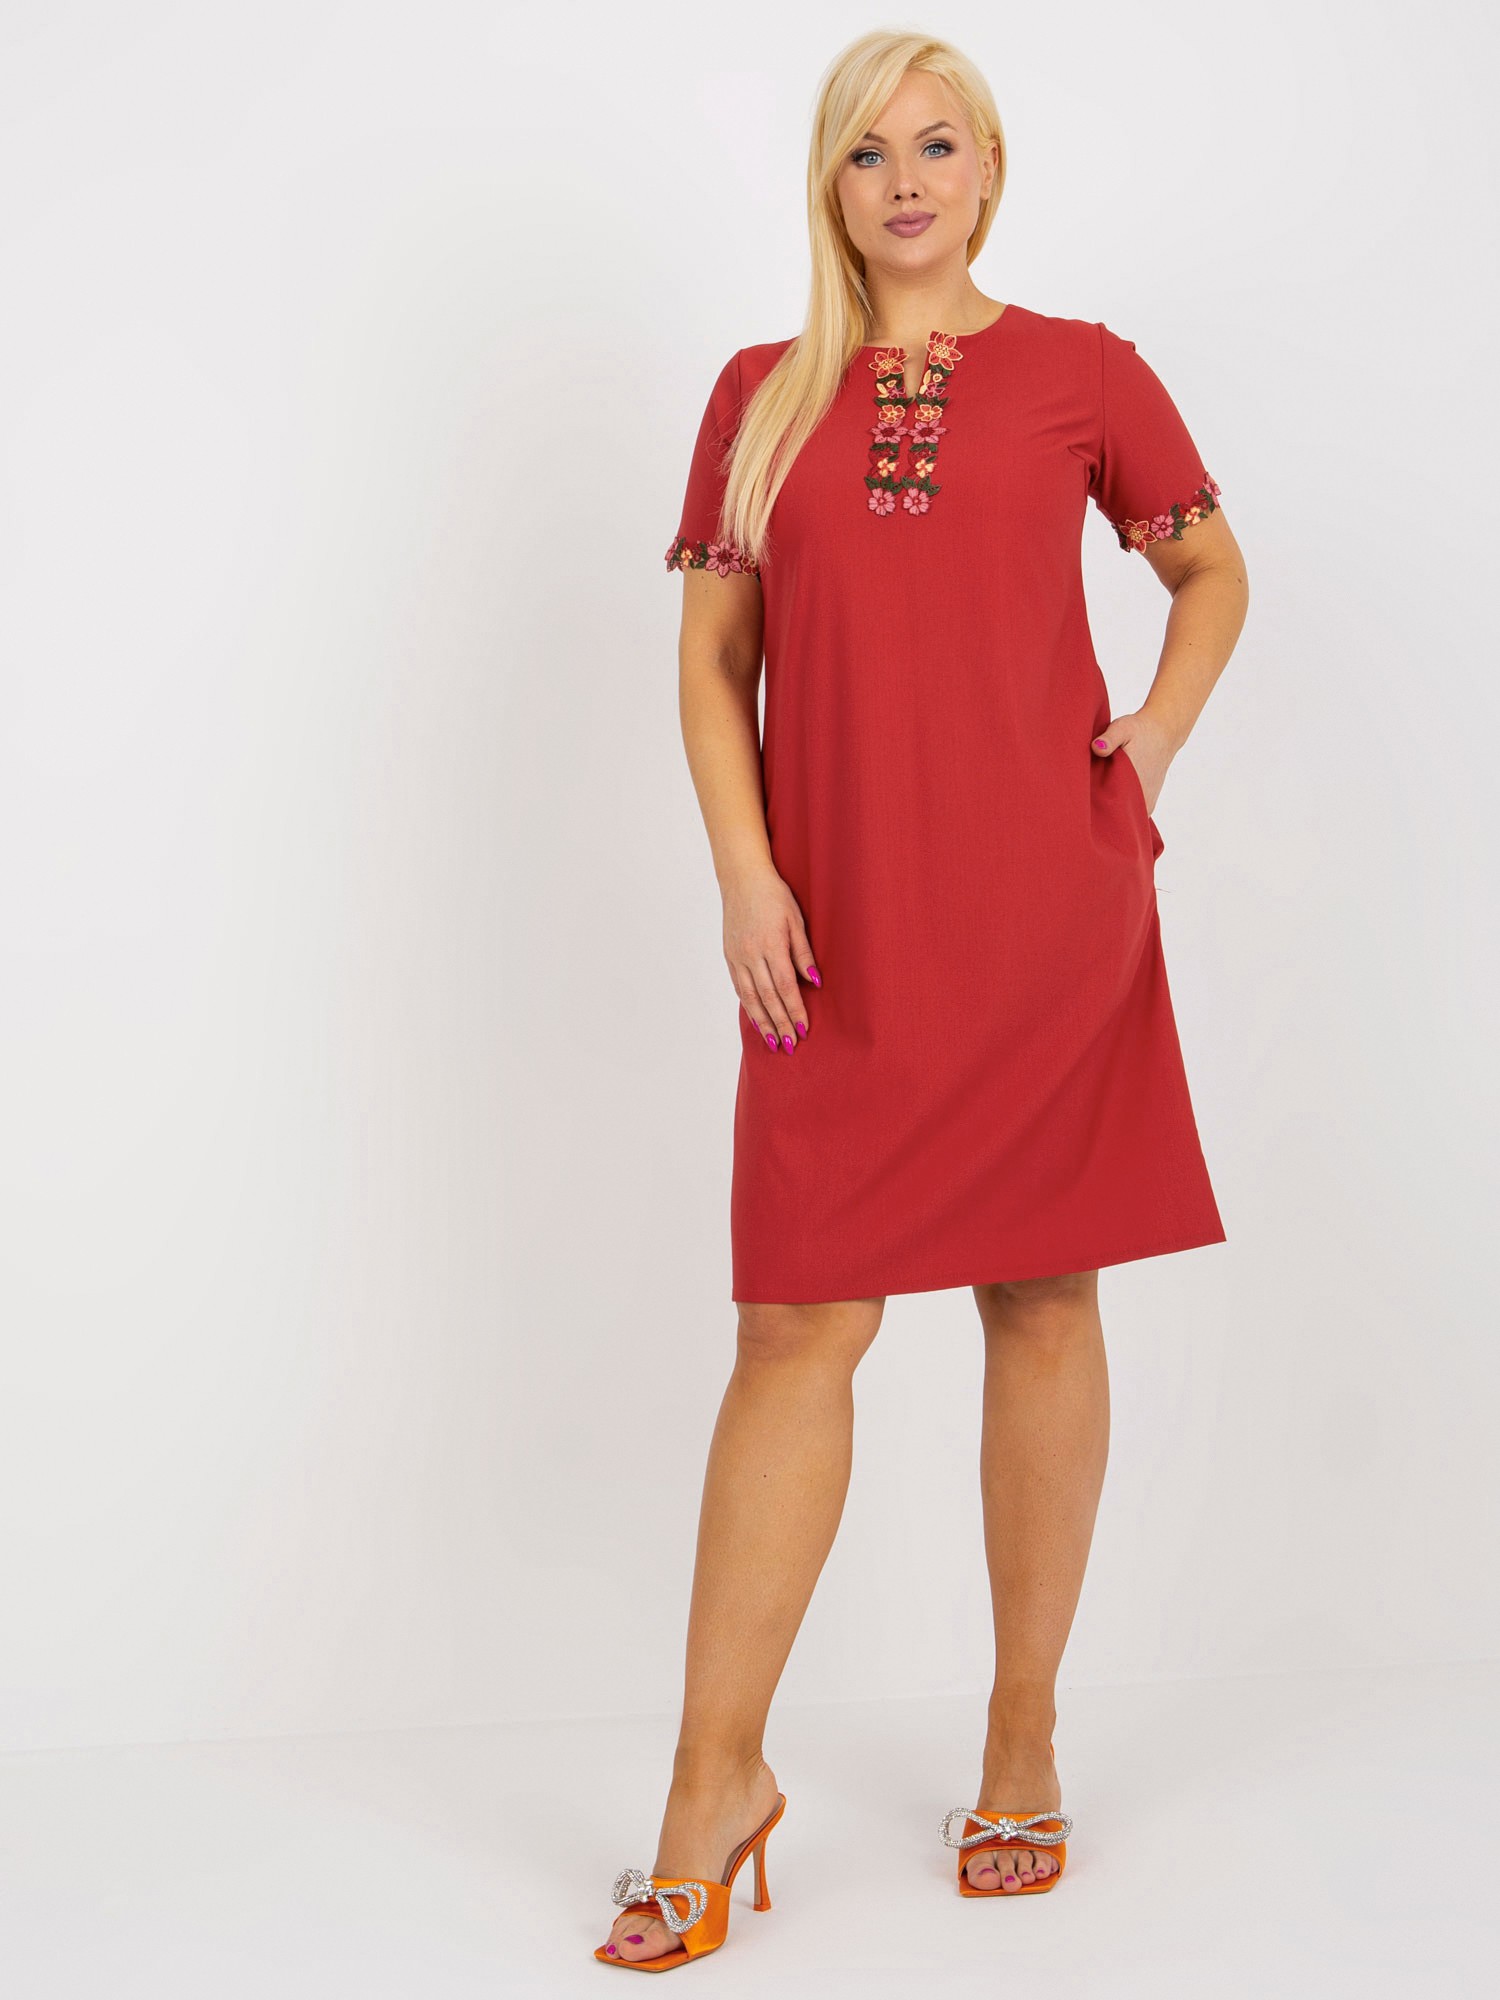 Tmavě červené šaty s květinovou krajkou LK-SK-506309.50-red Velikost: 44